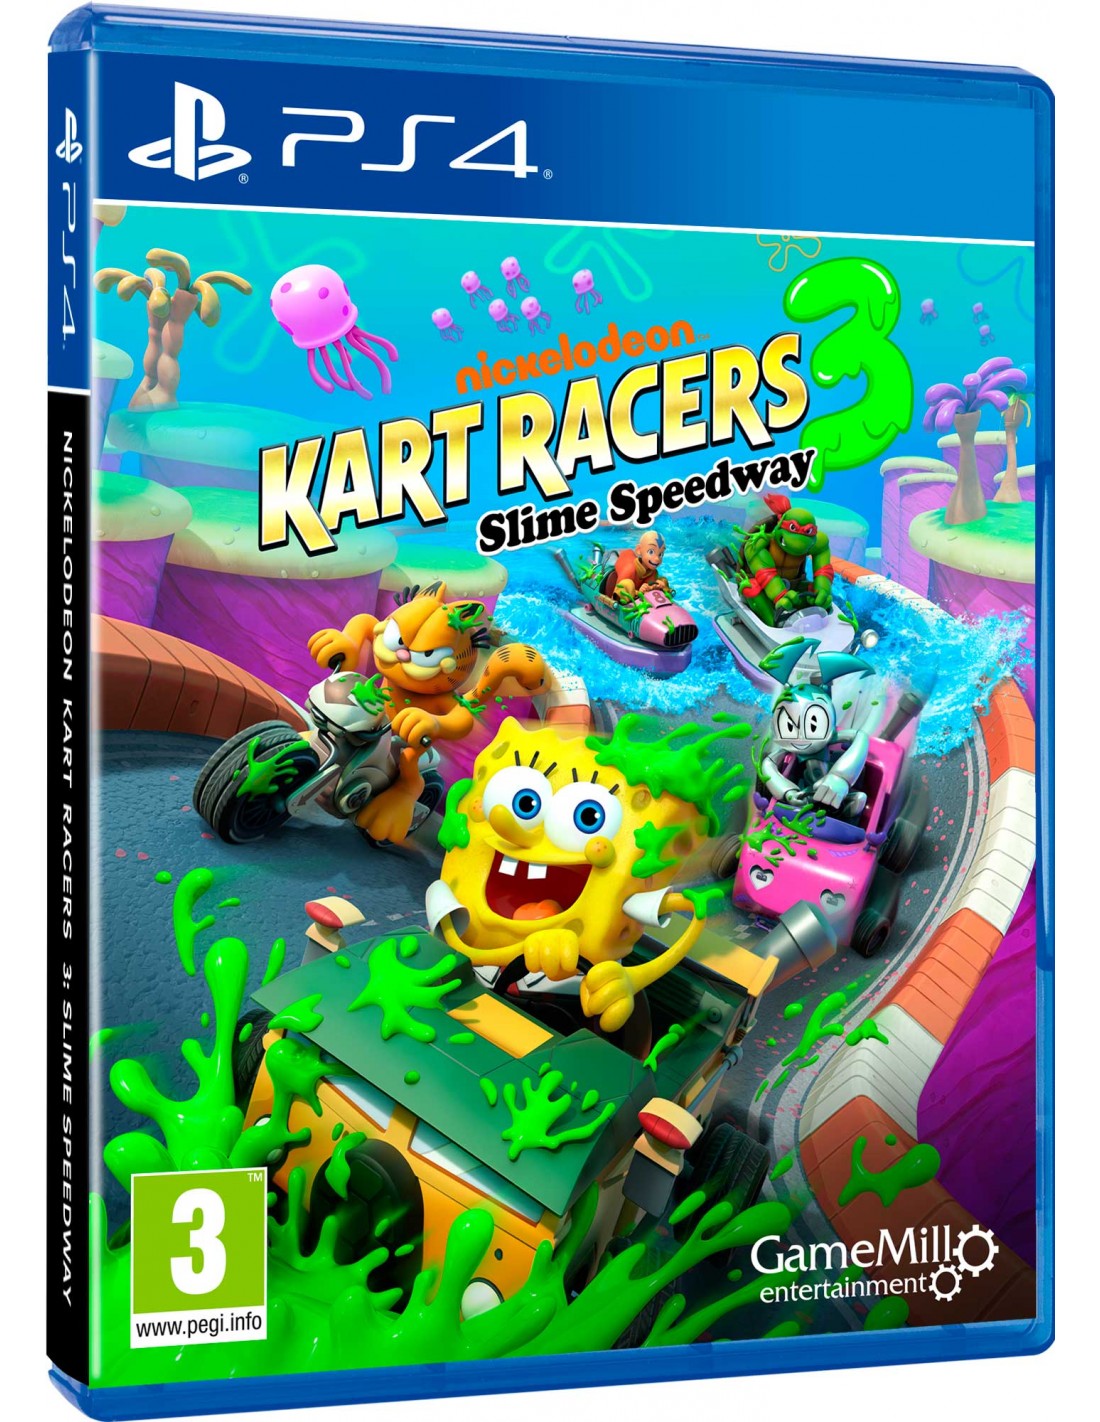 PS4 - Nickelodeon Kart Racers 3: Slime